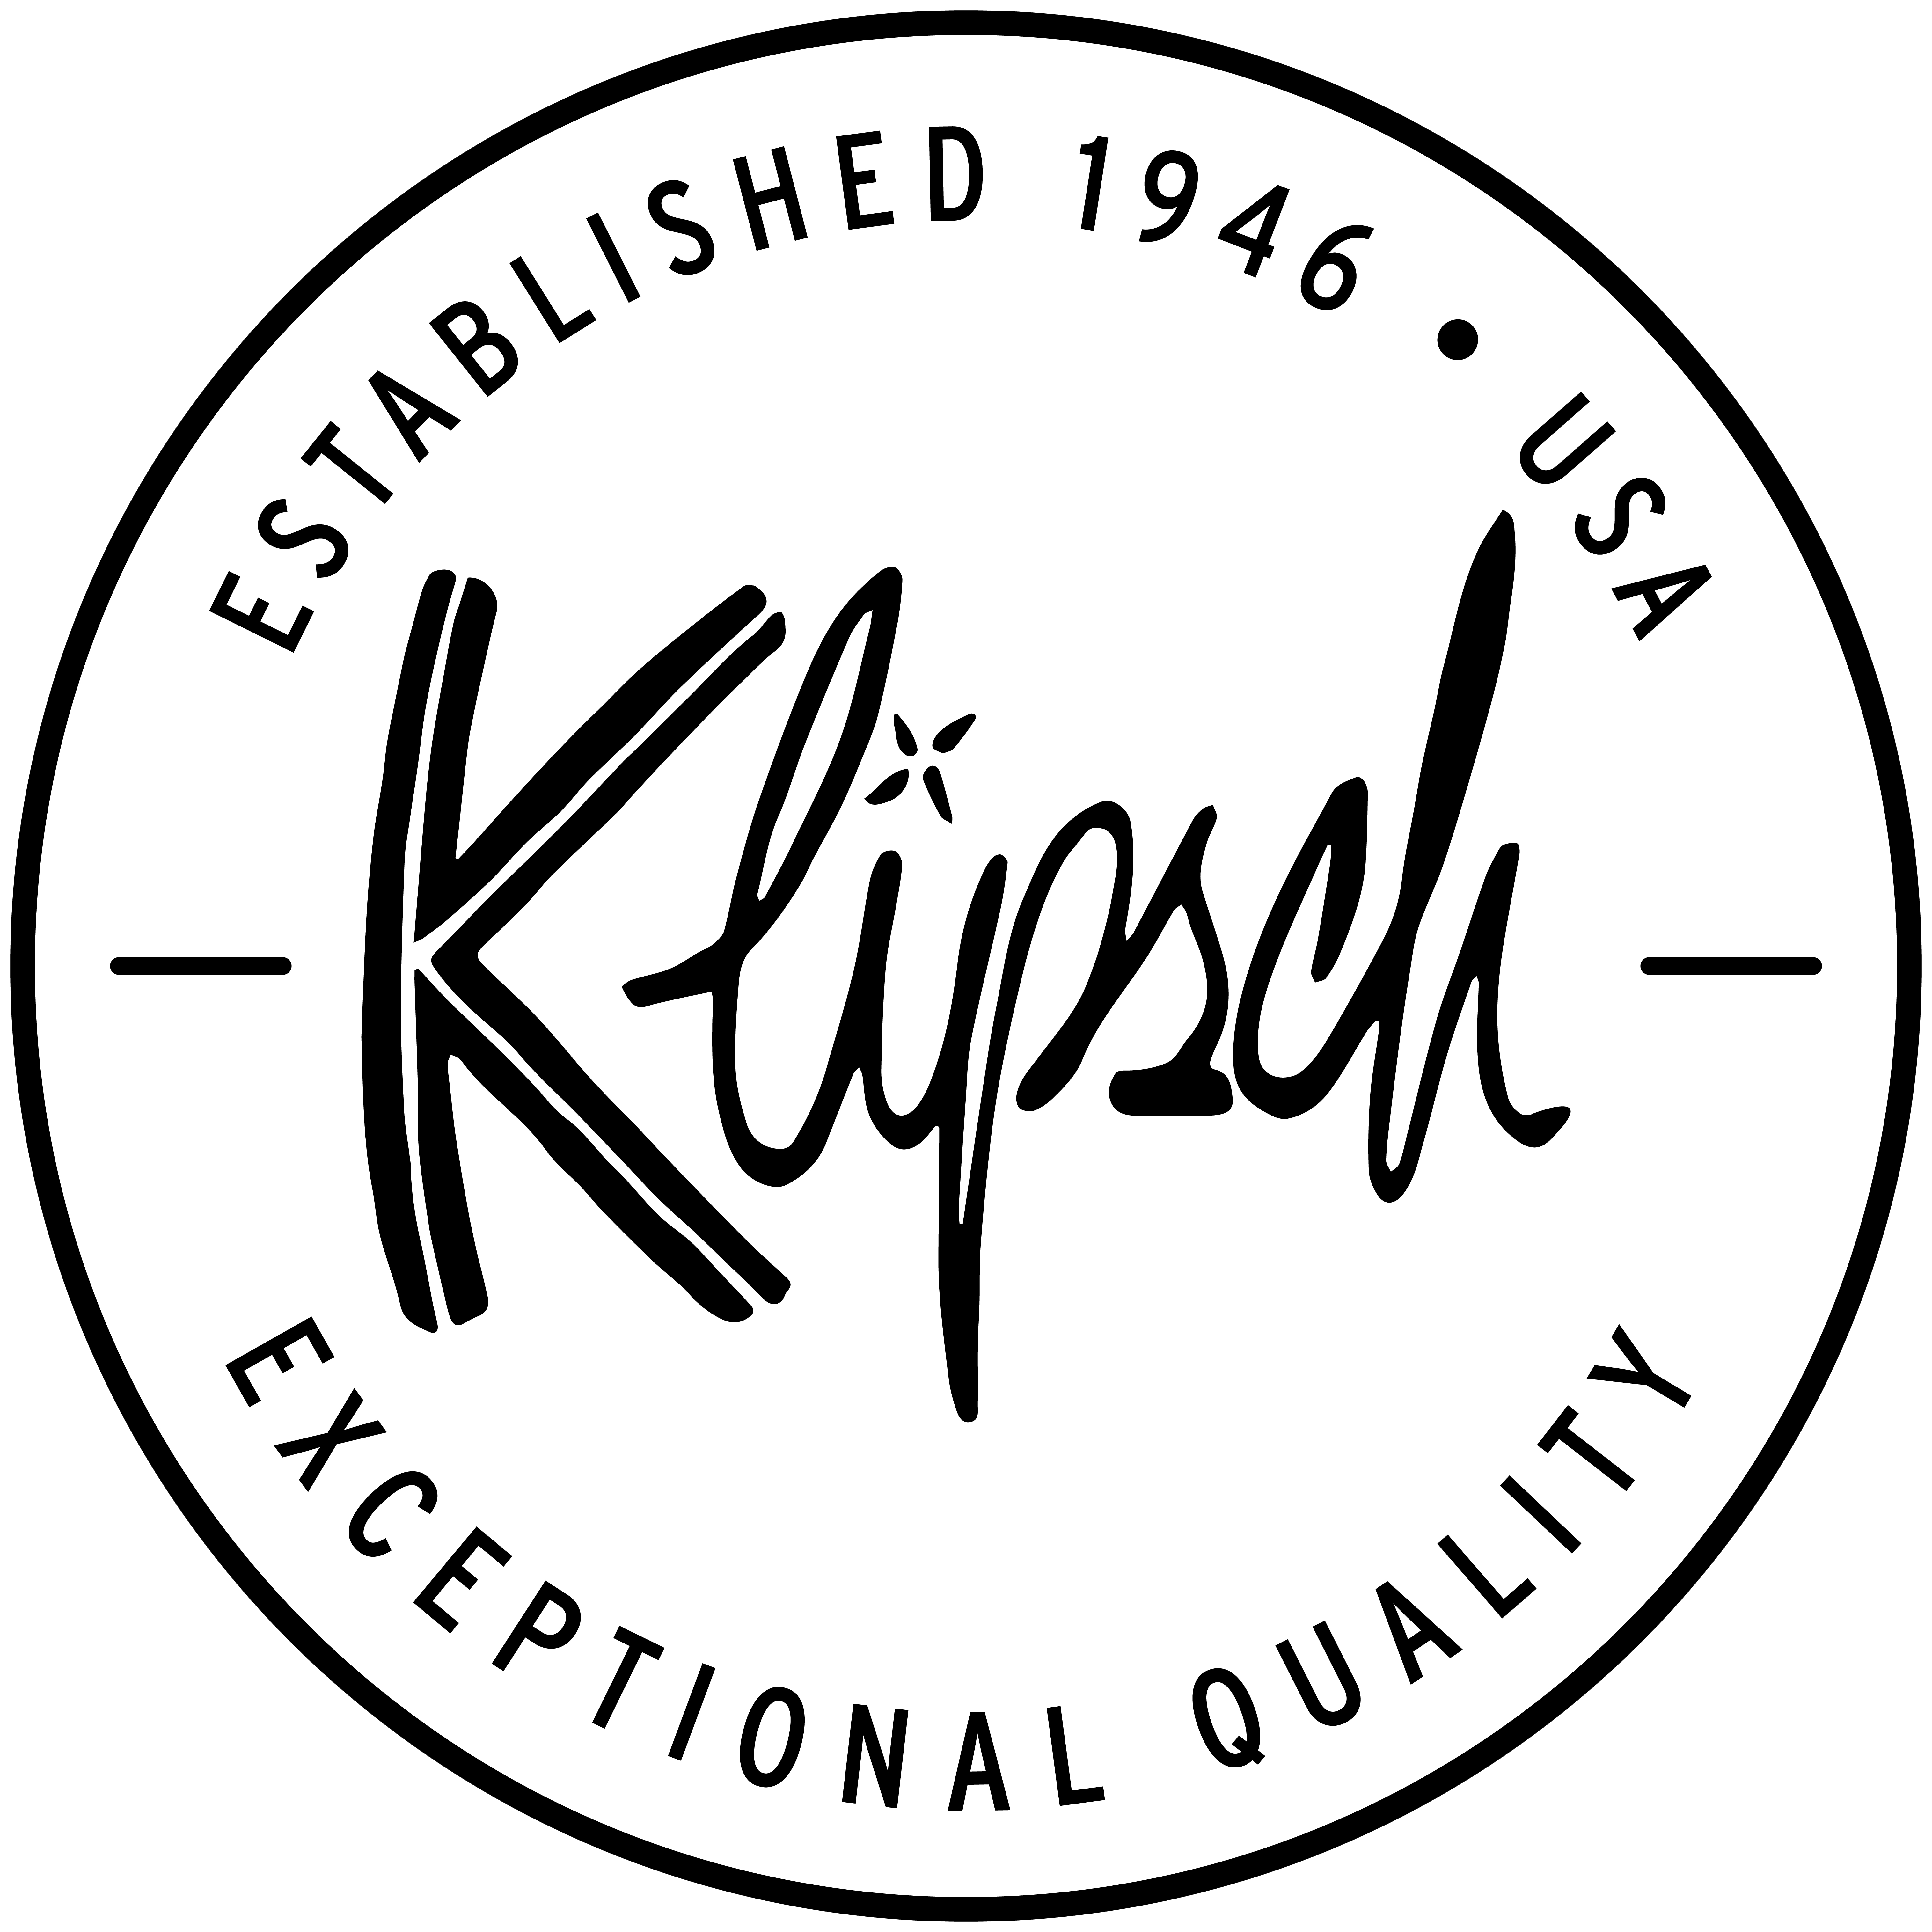 www.klipsch.com